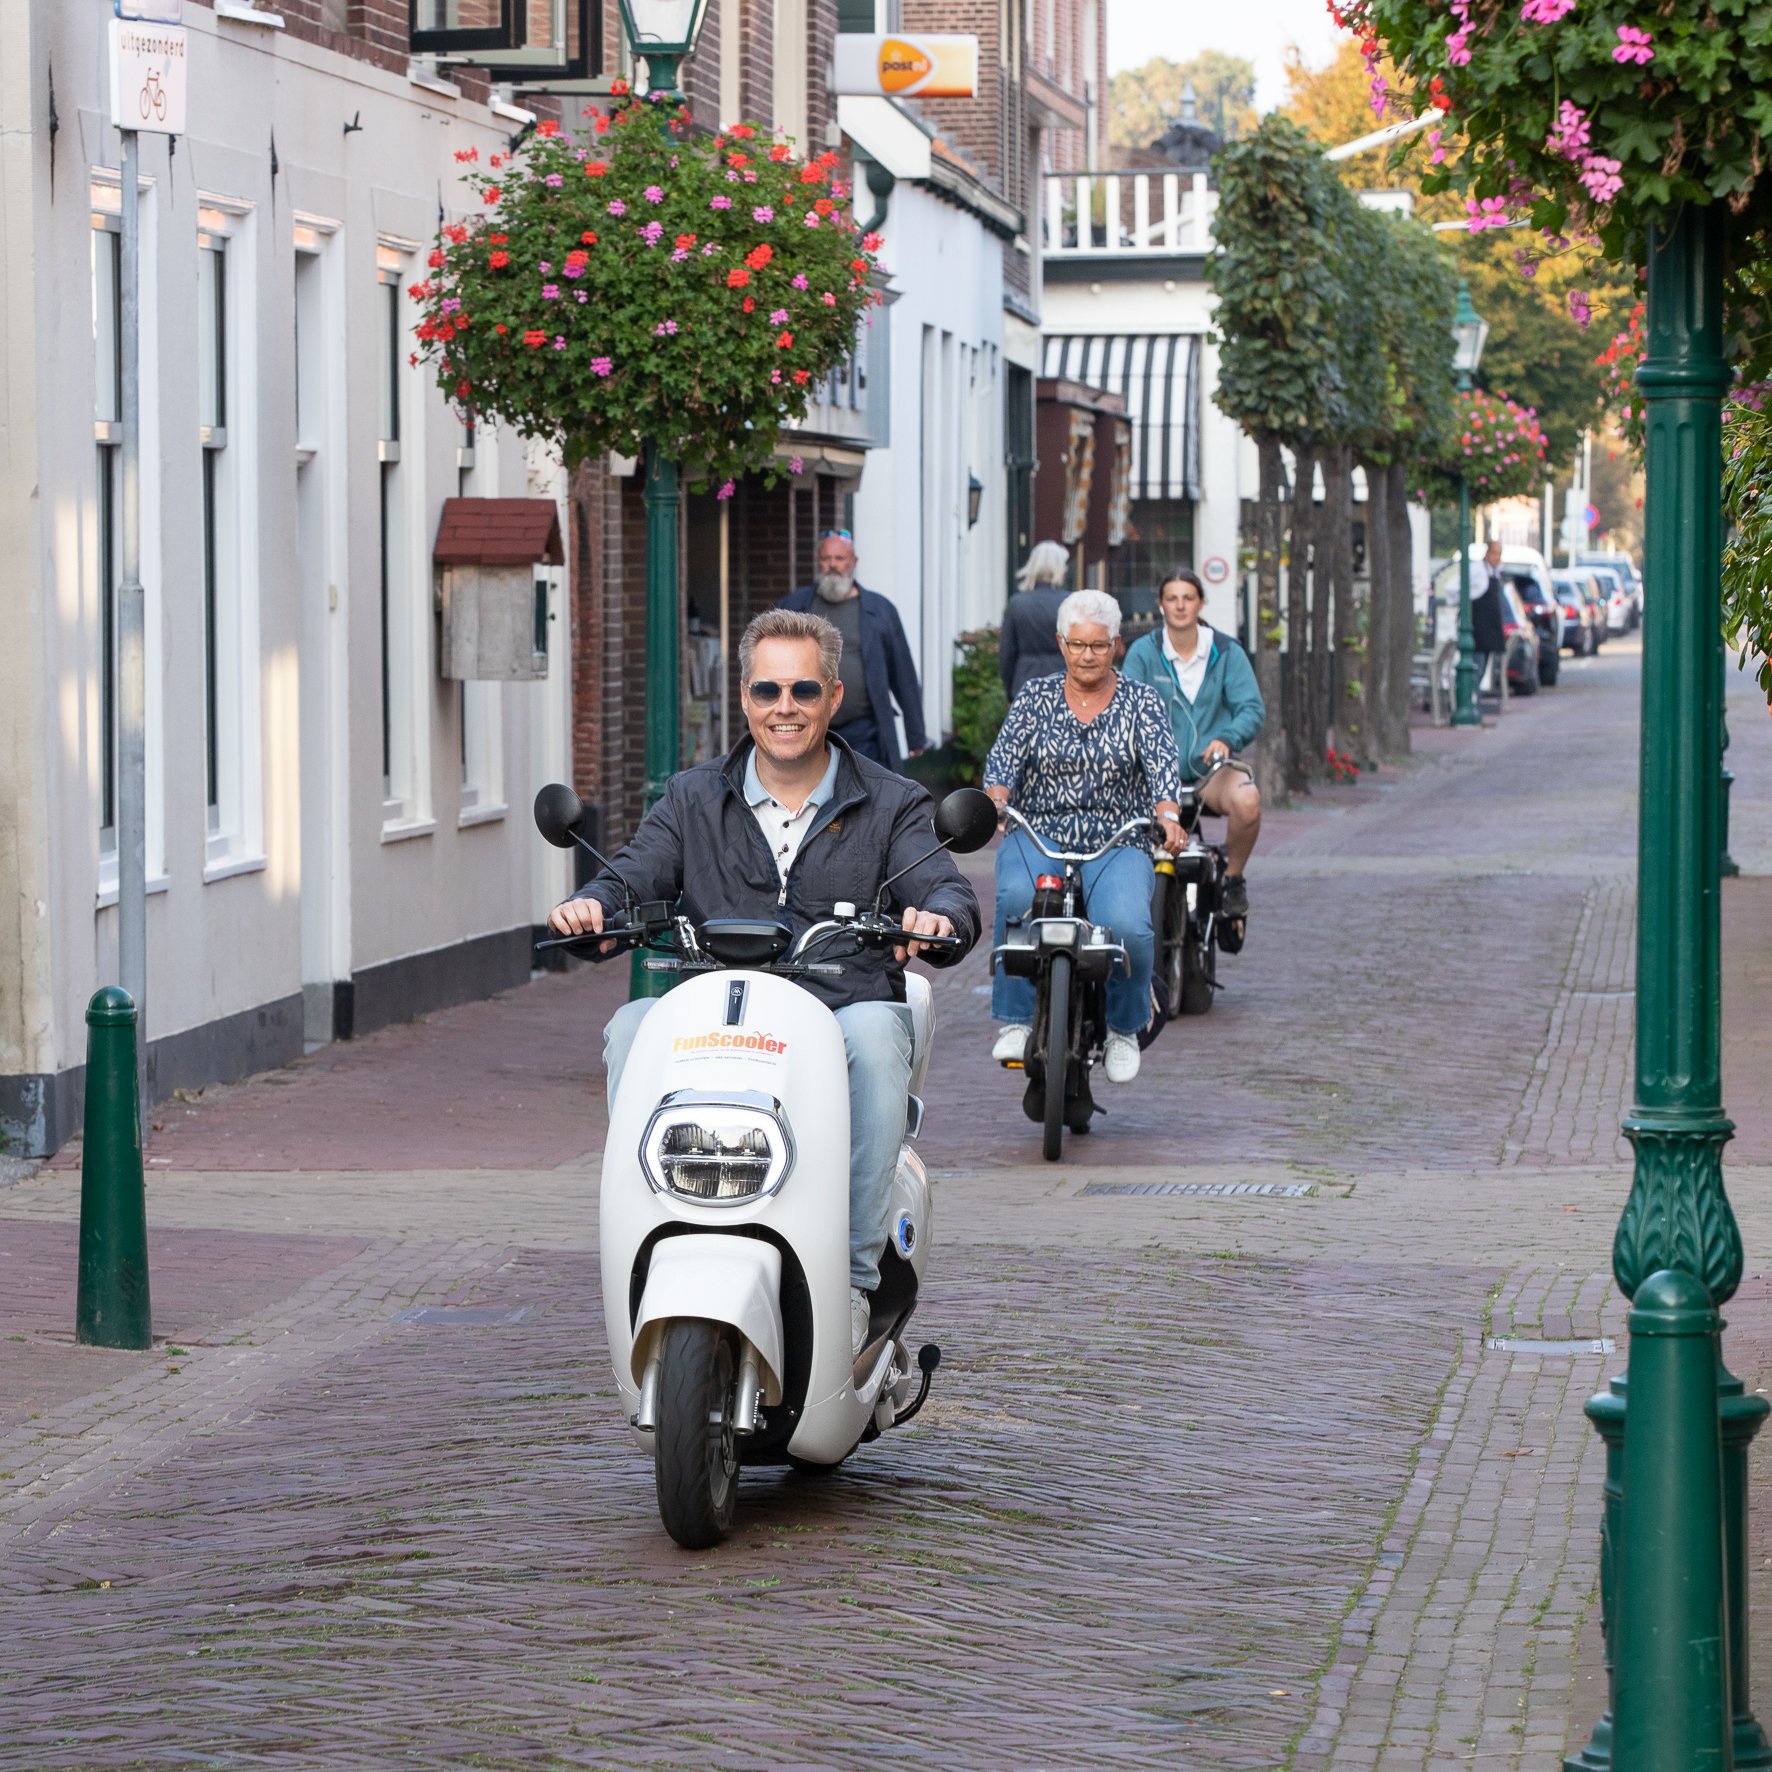 Espacioso veneno Rizo E-scooter huren in Noordwijk, Katwijk en in de Bollenstreek!